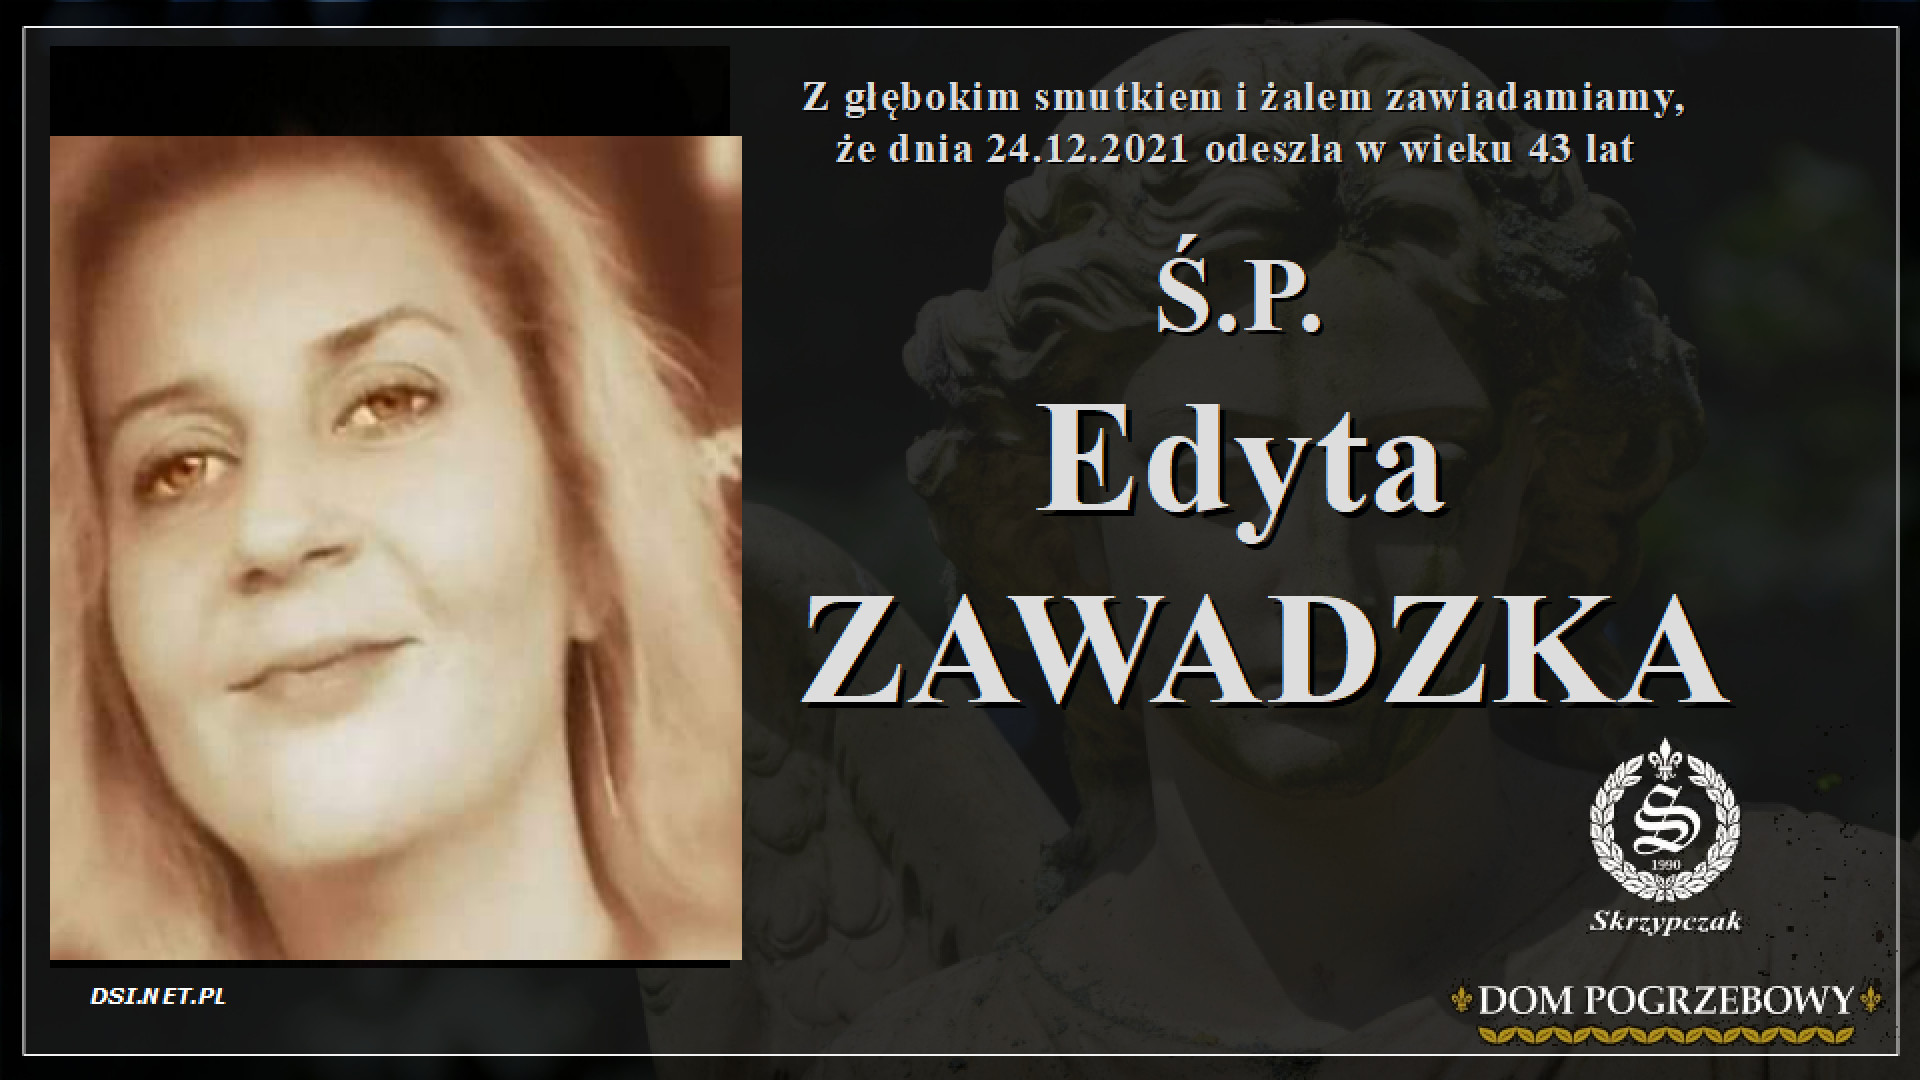 Ś.P. Edyta Zawadzka